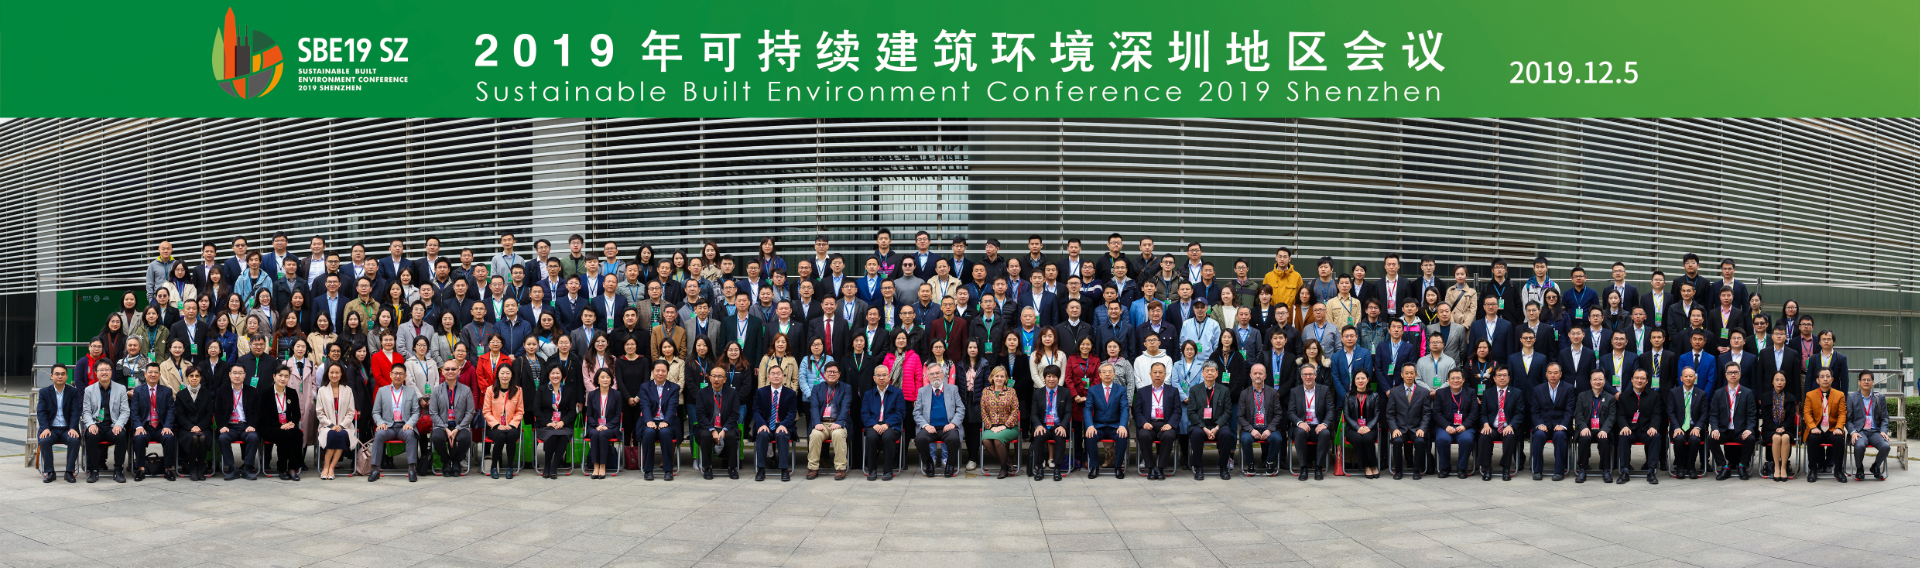 2019年可持续建筑环境深圳地区会议